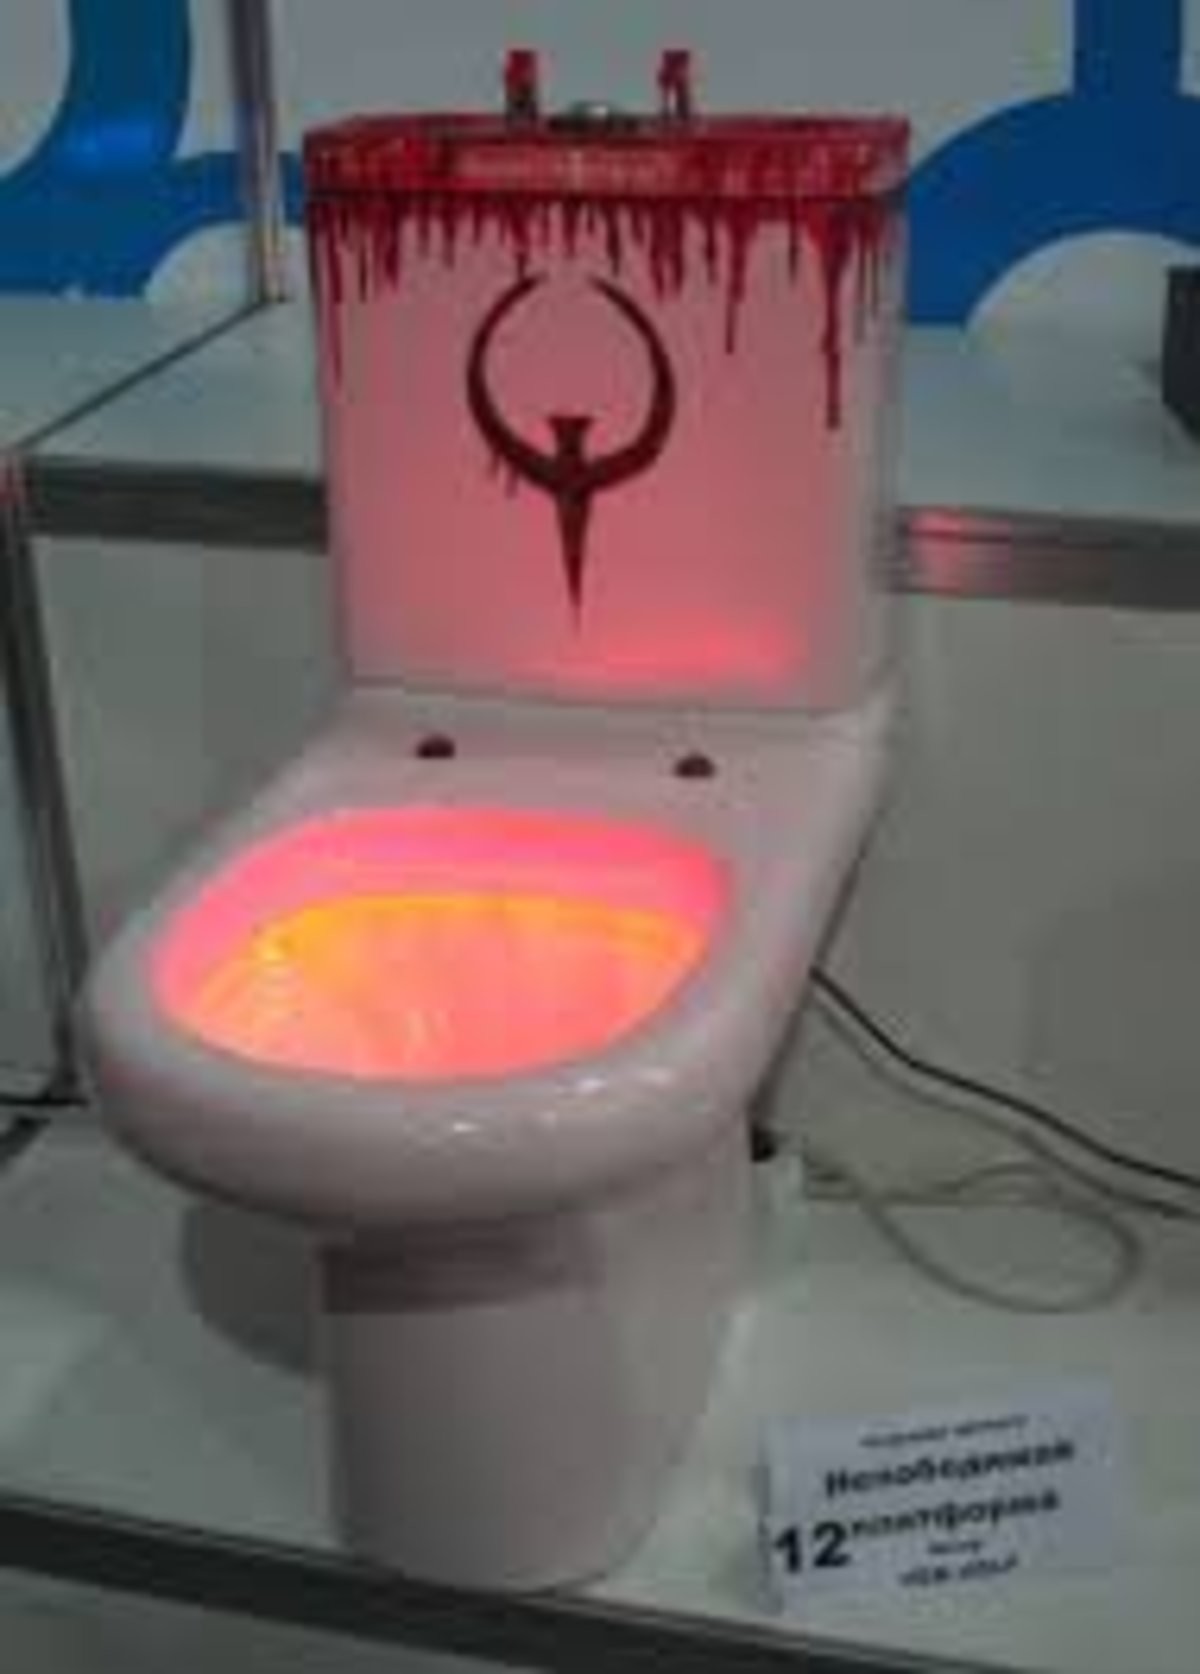 красный стул в туалете